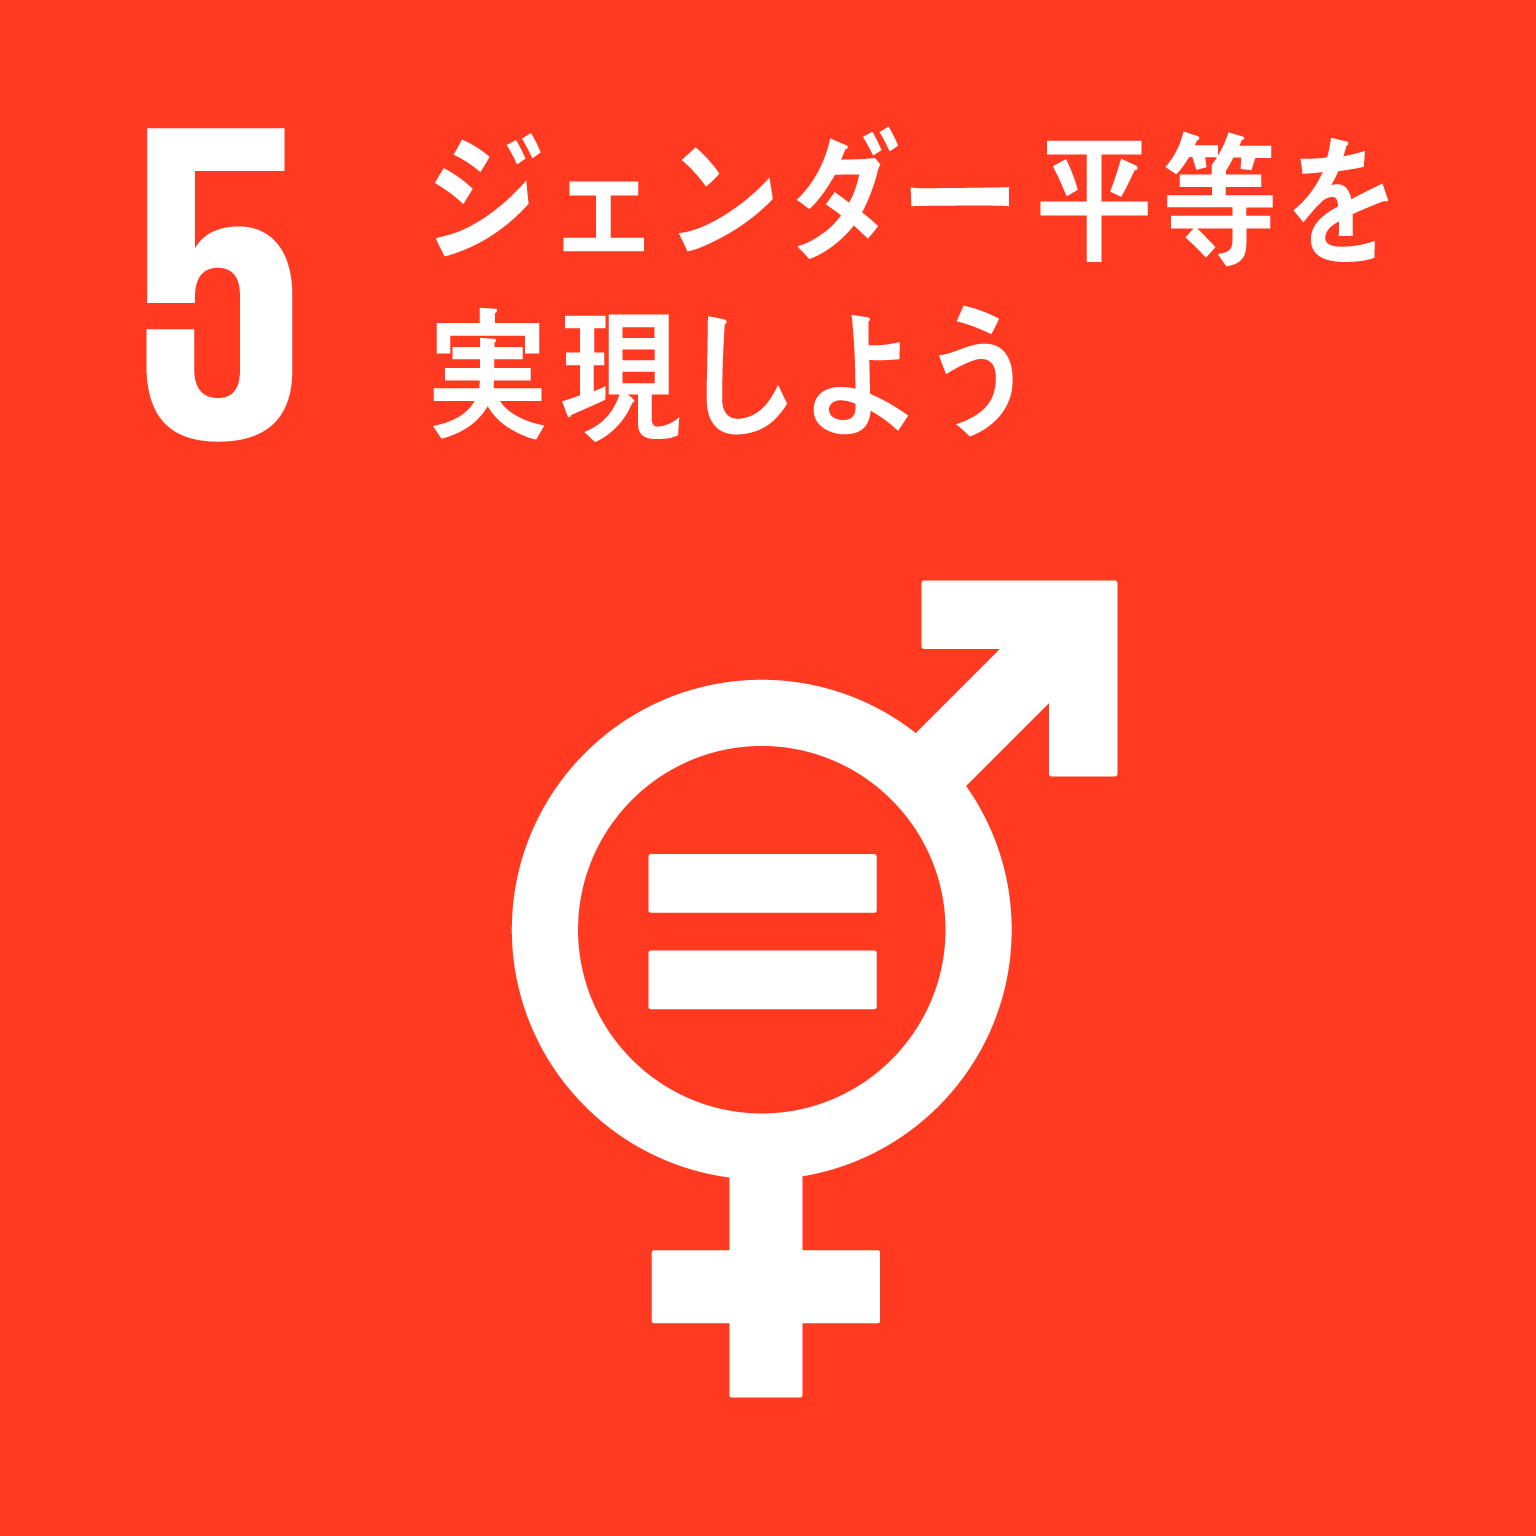 「5.ジェンダー平等を実現しよう」の文字と目標5のロゴ